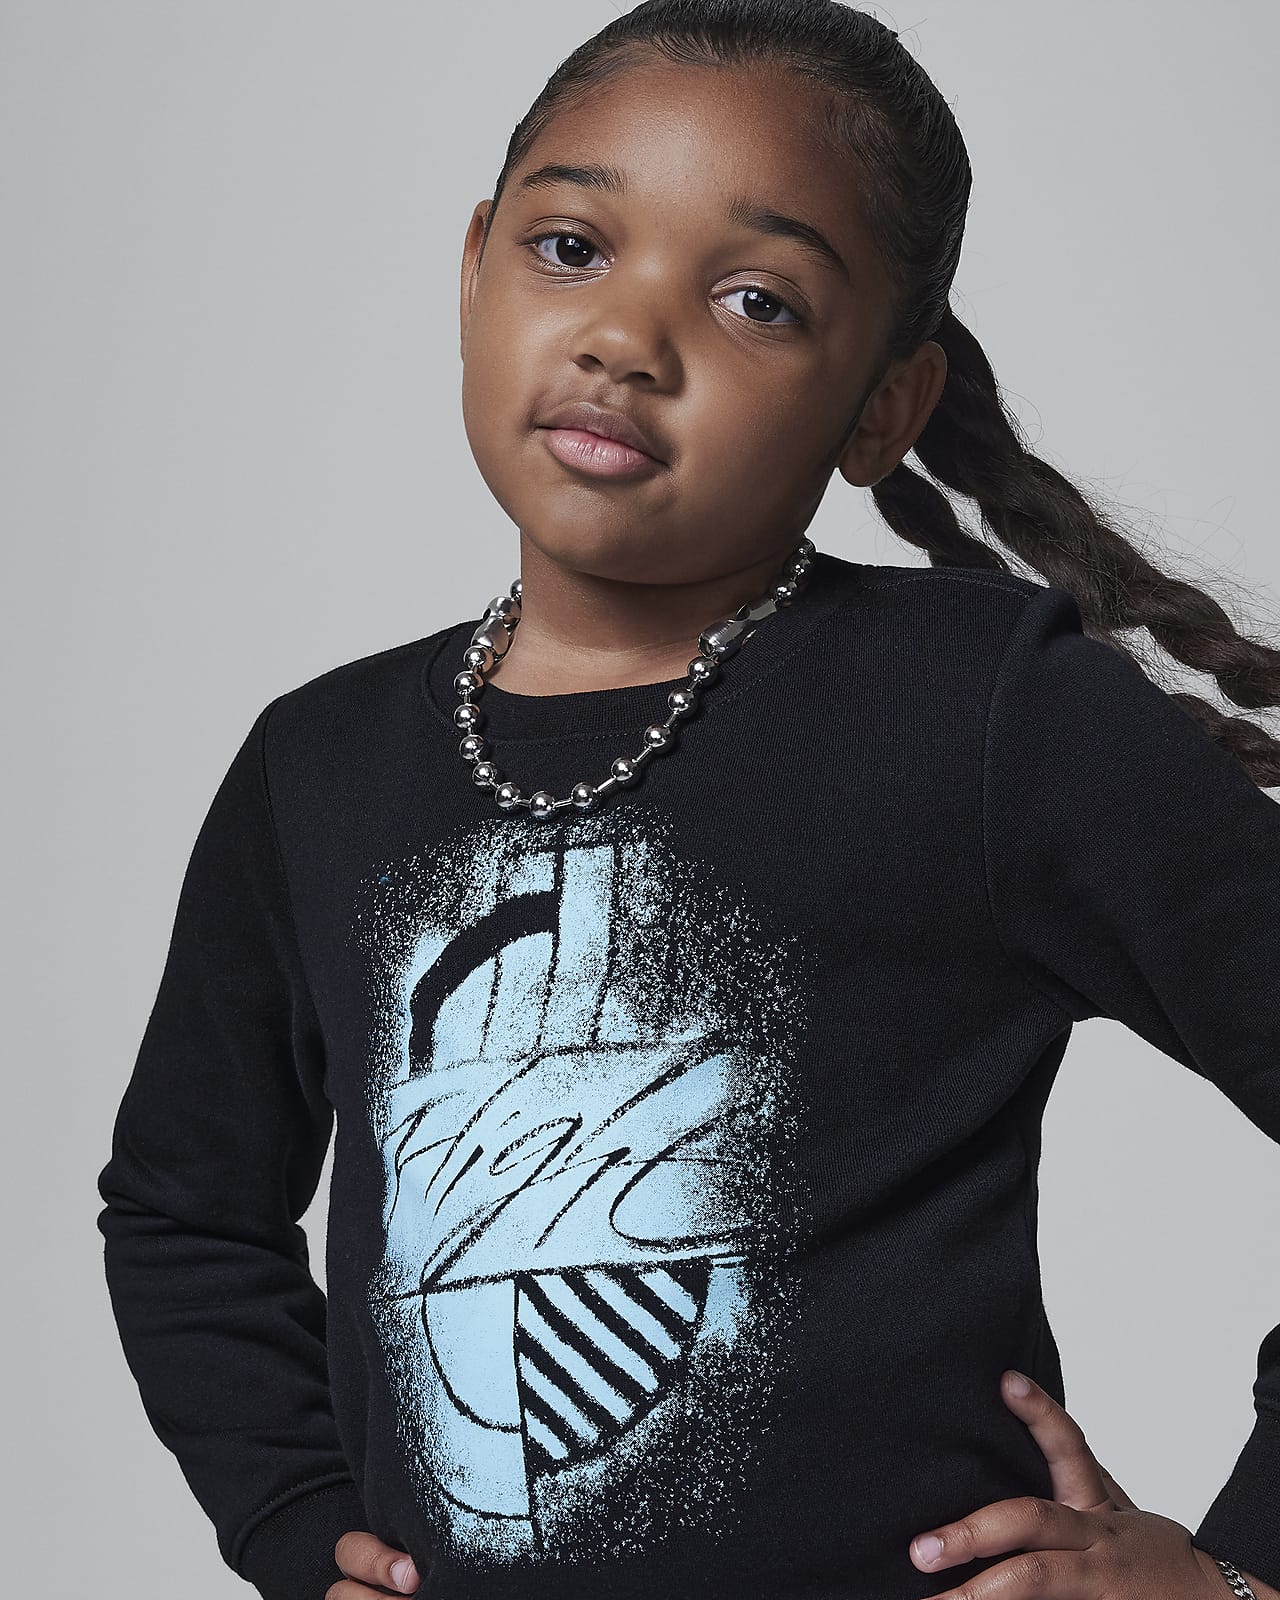 Jordan W J Brooklyn Fleece Leggings Set Younger Kids' 2-Piece Set. Nike LU